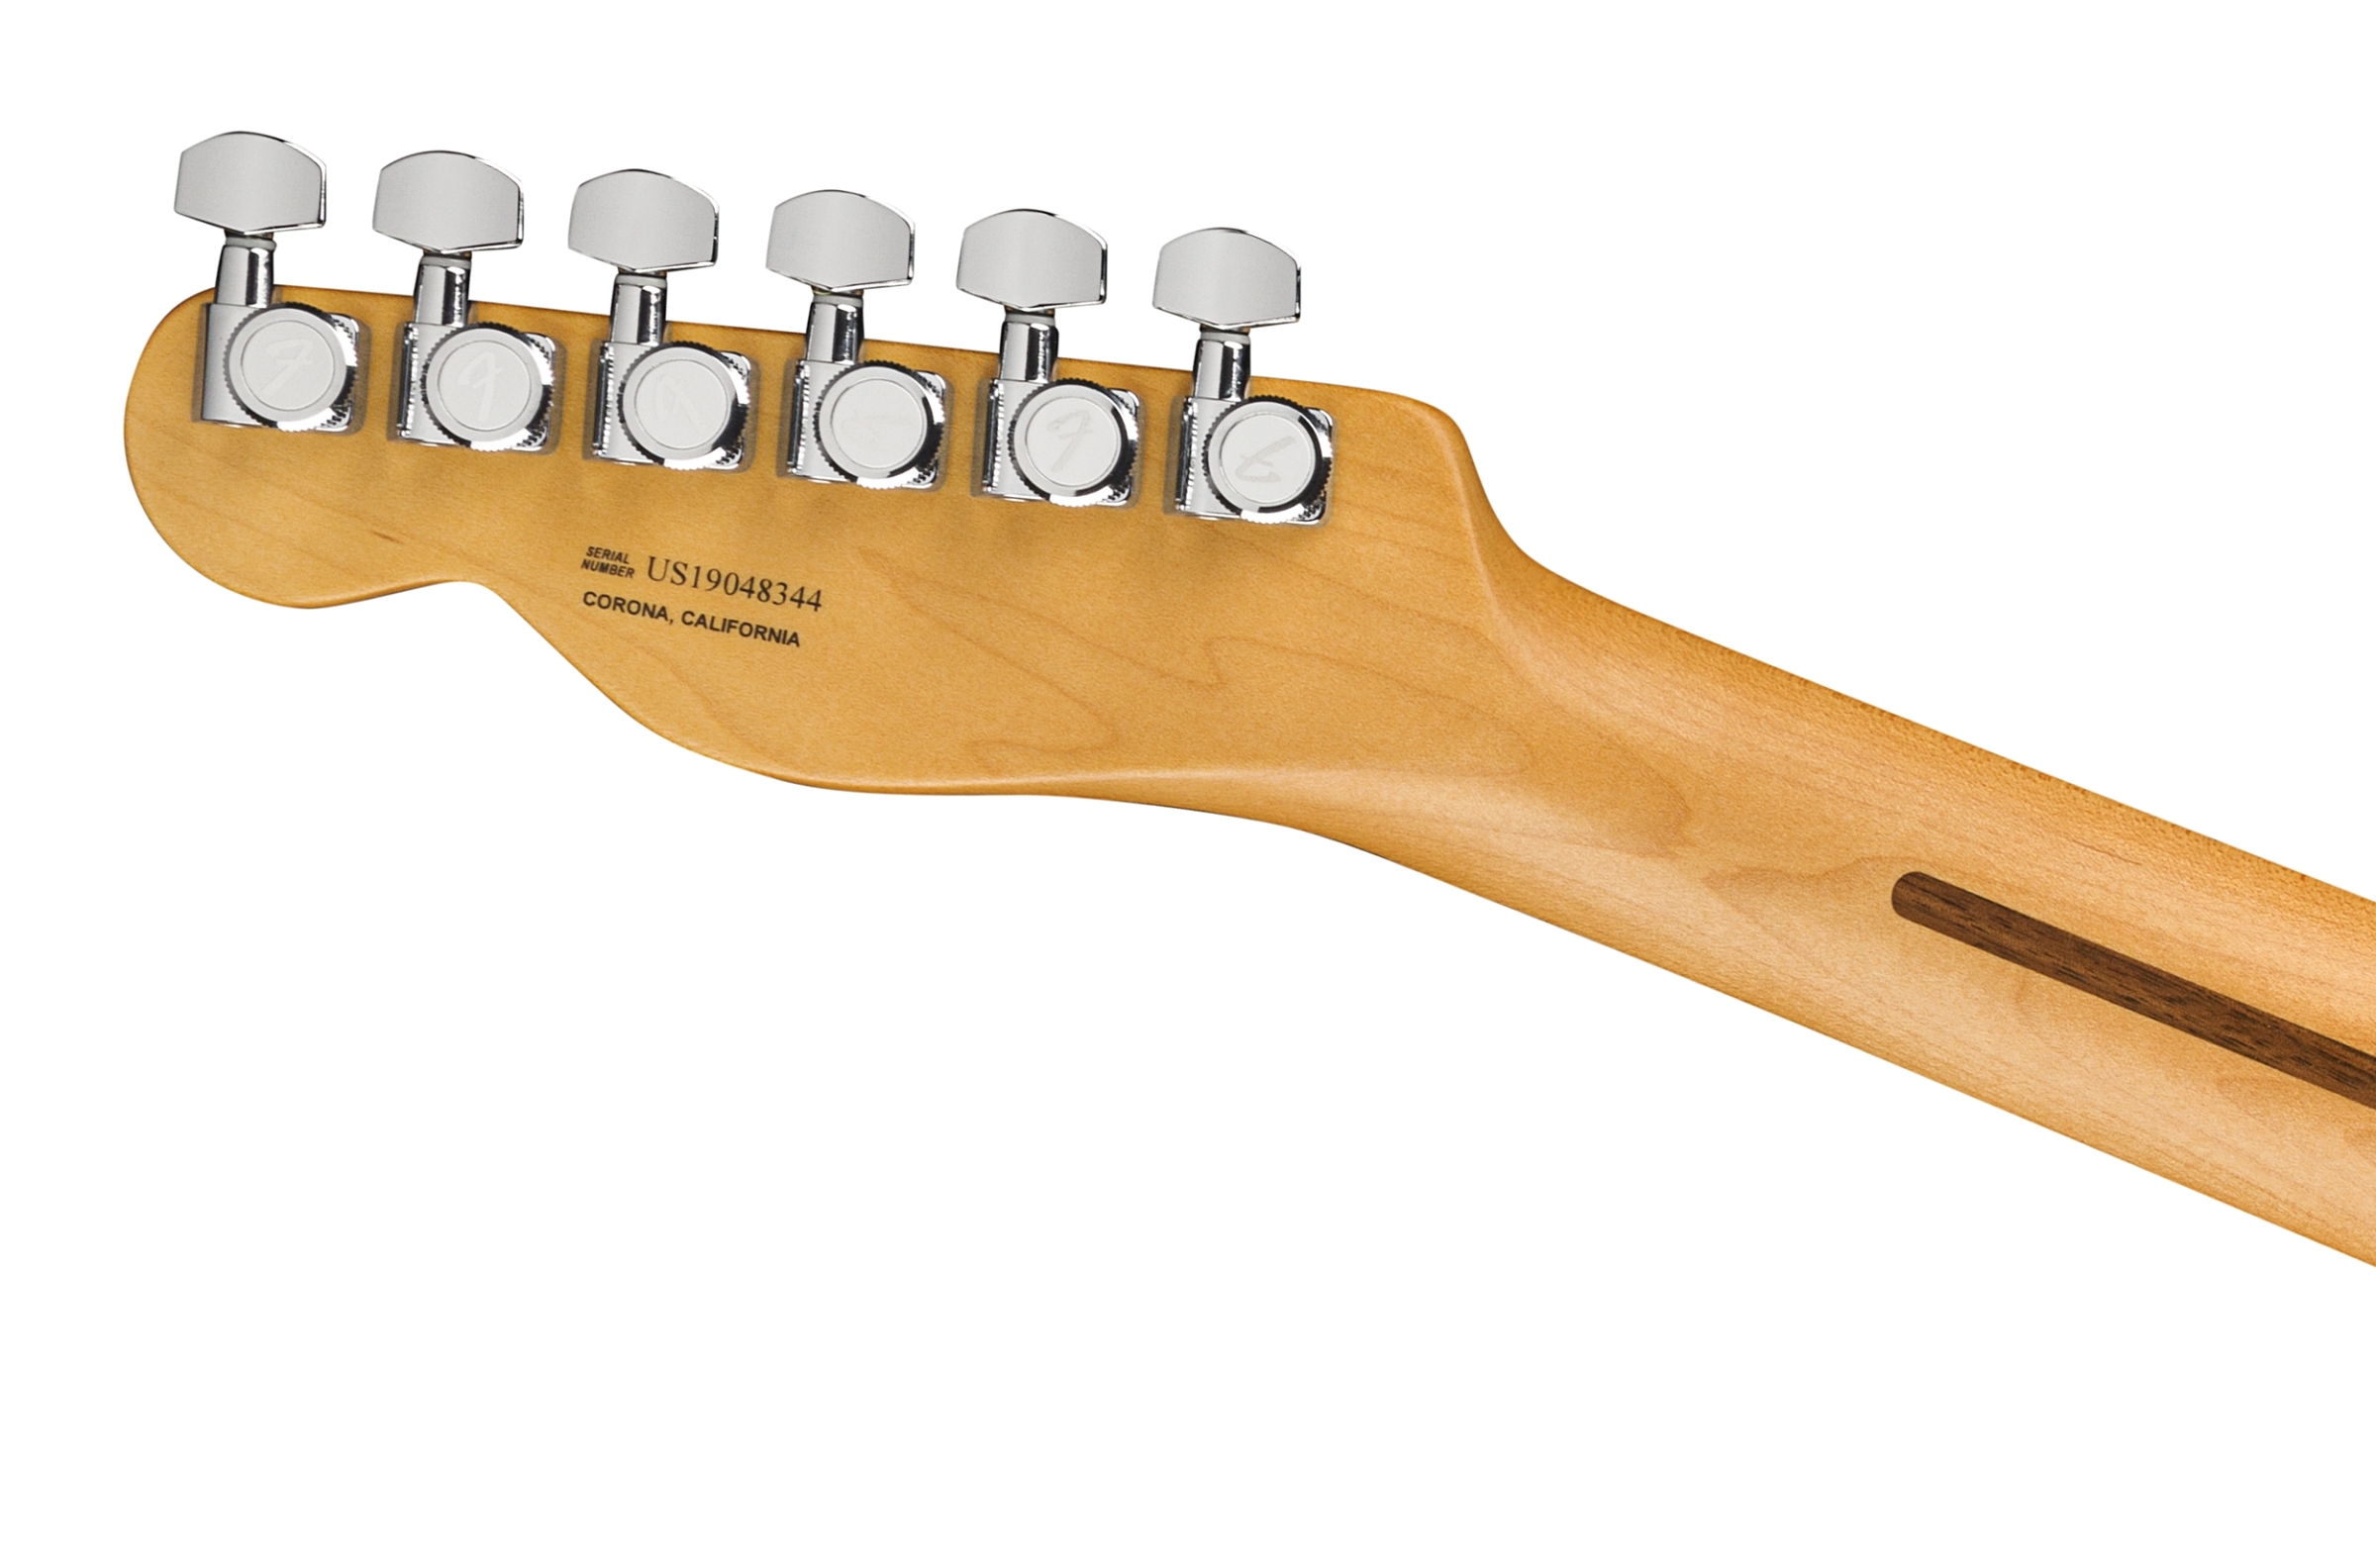 Fender  American Ultra Telecaster®, Maple Fingerboard, Ultraburst